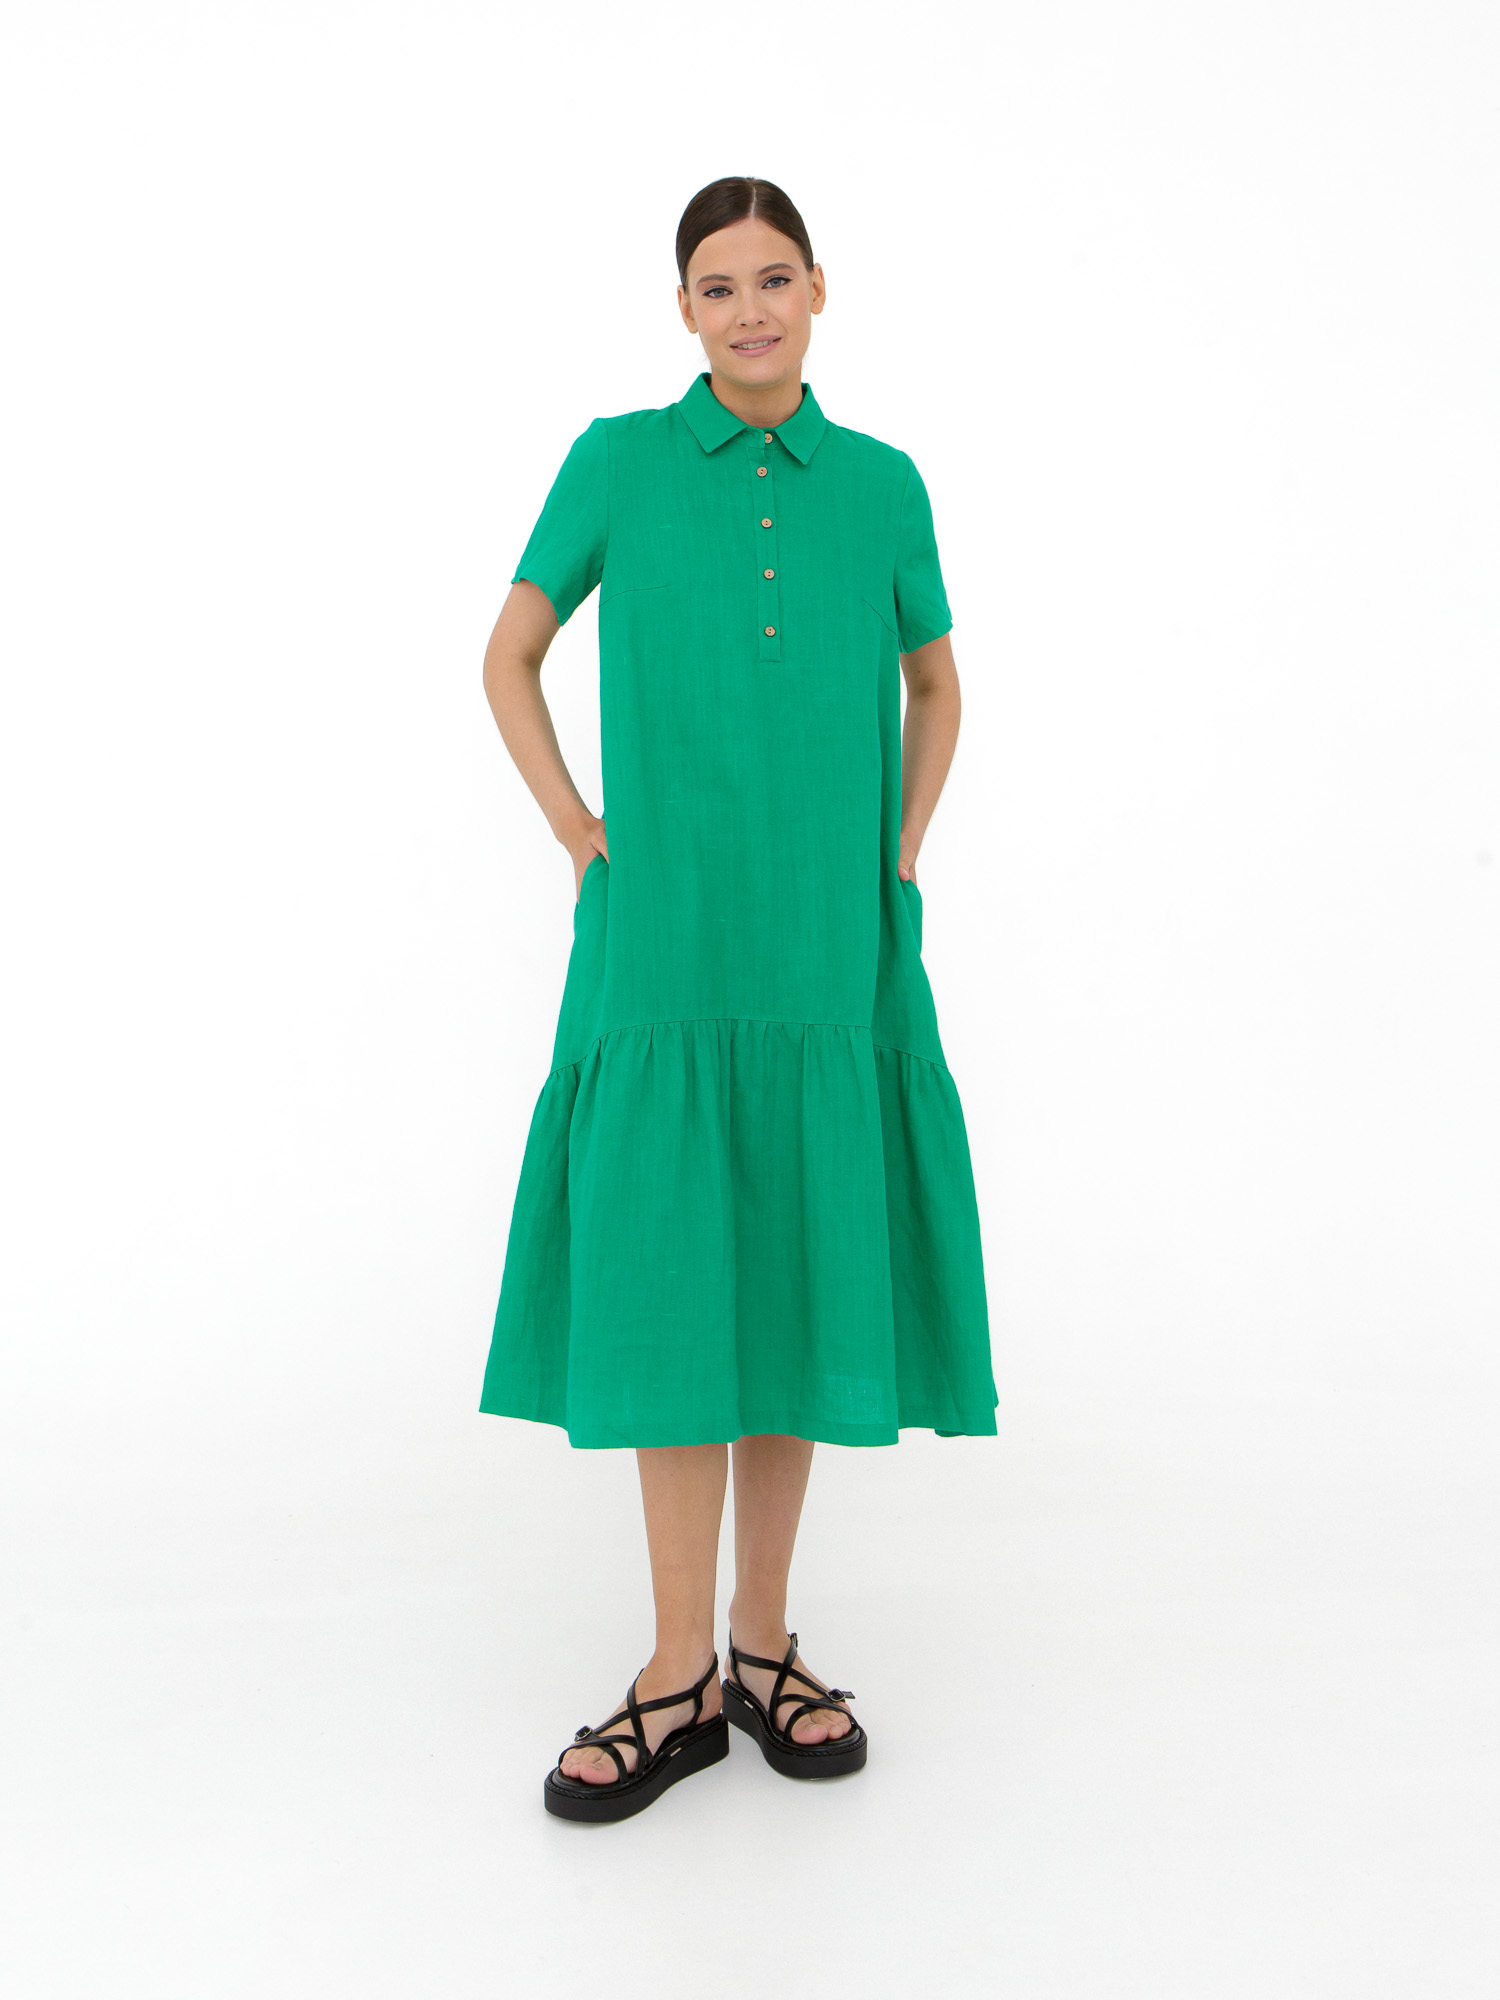 Платье женское КЛ-7521-ИЛ23 светло-зеленое 50 ELECTRA STYLE, цвет светло-зелёный, размер 50